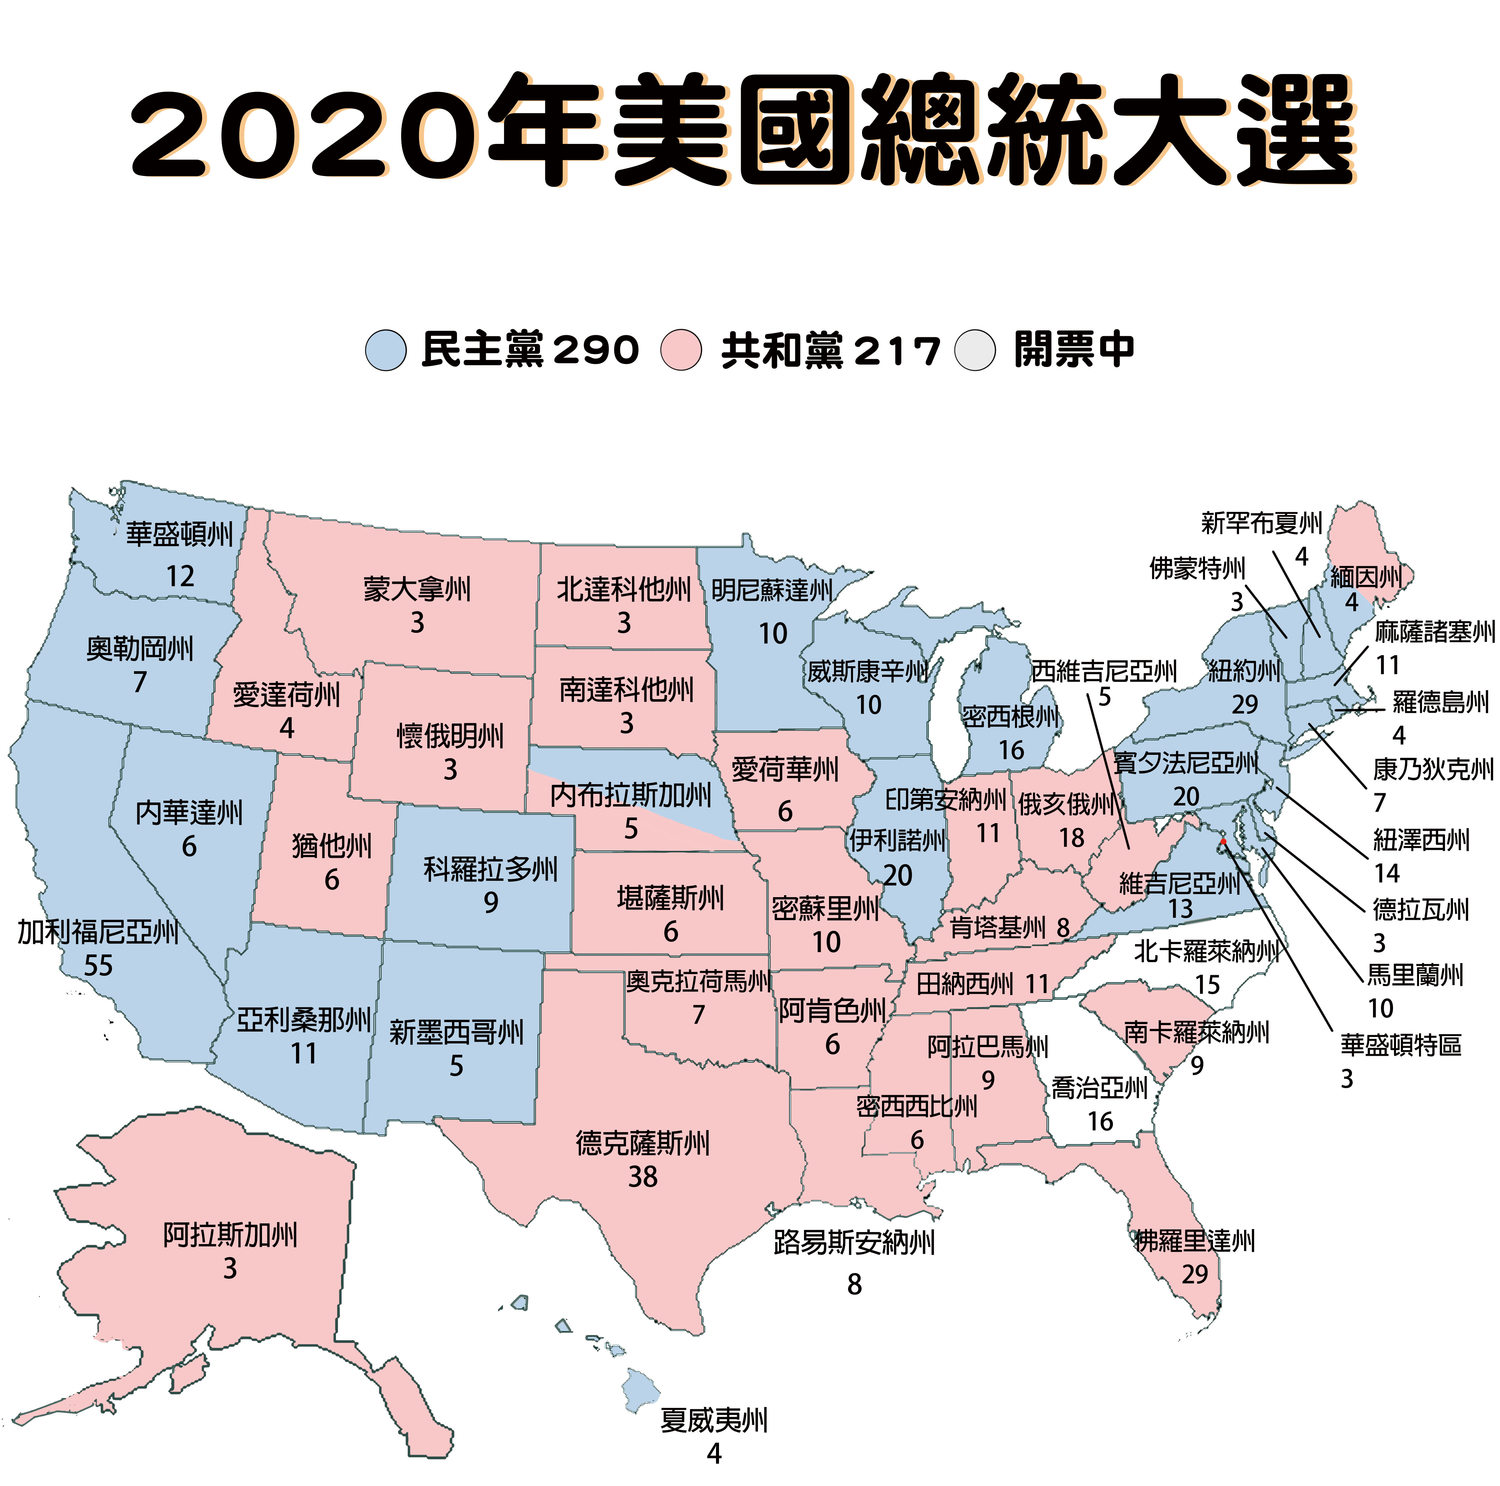 2020 美國總統大選開票數據。依據福斯新聞的最新報導，川普拿下阿拉斯加州，新增3張選舉人票。目前選舉人票總數拜登 290 vs.川普 217。   圖：新頭殼製作